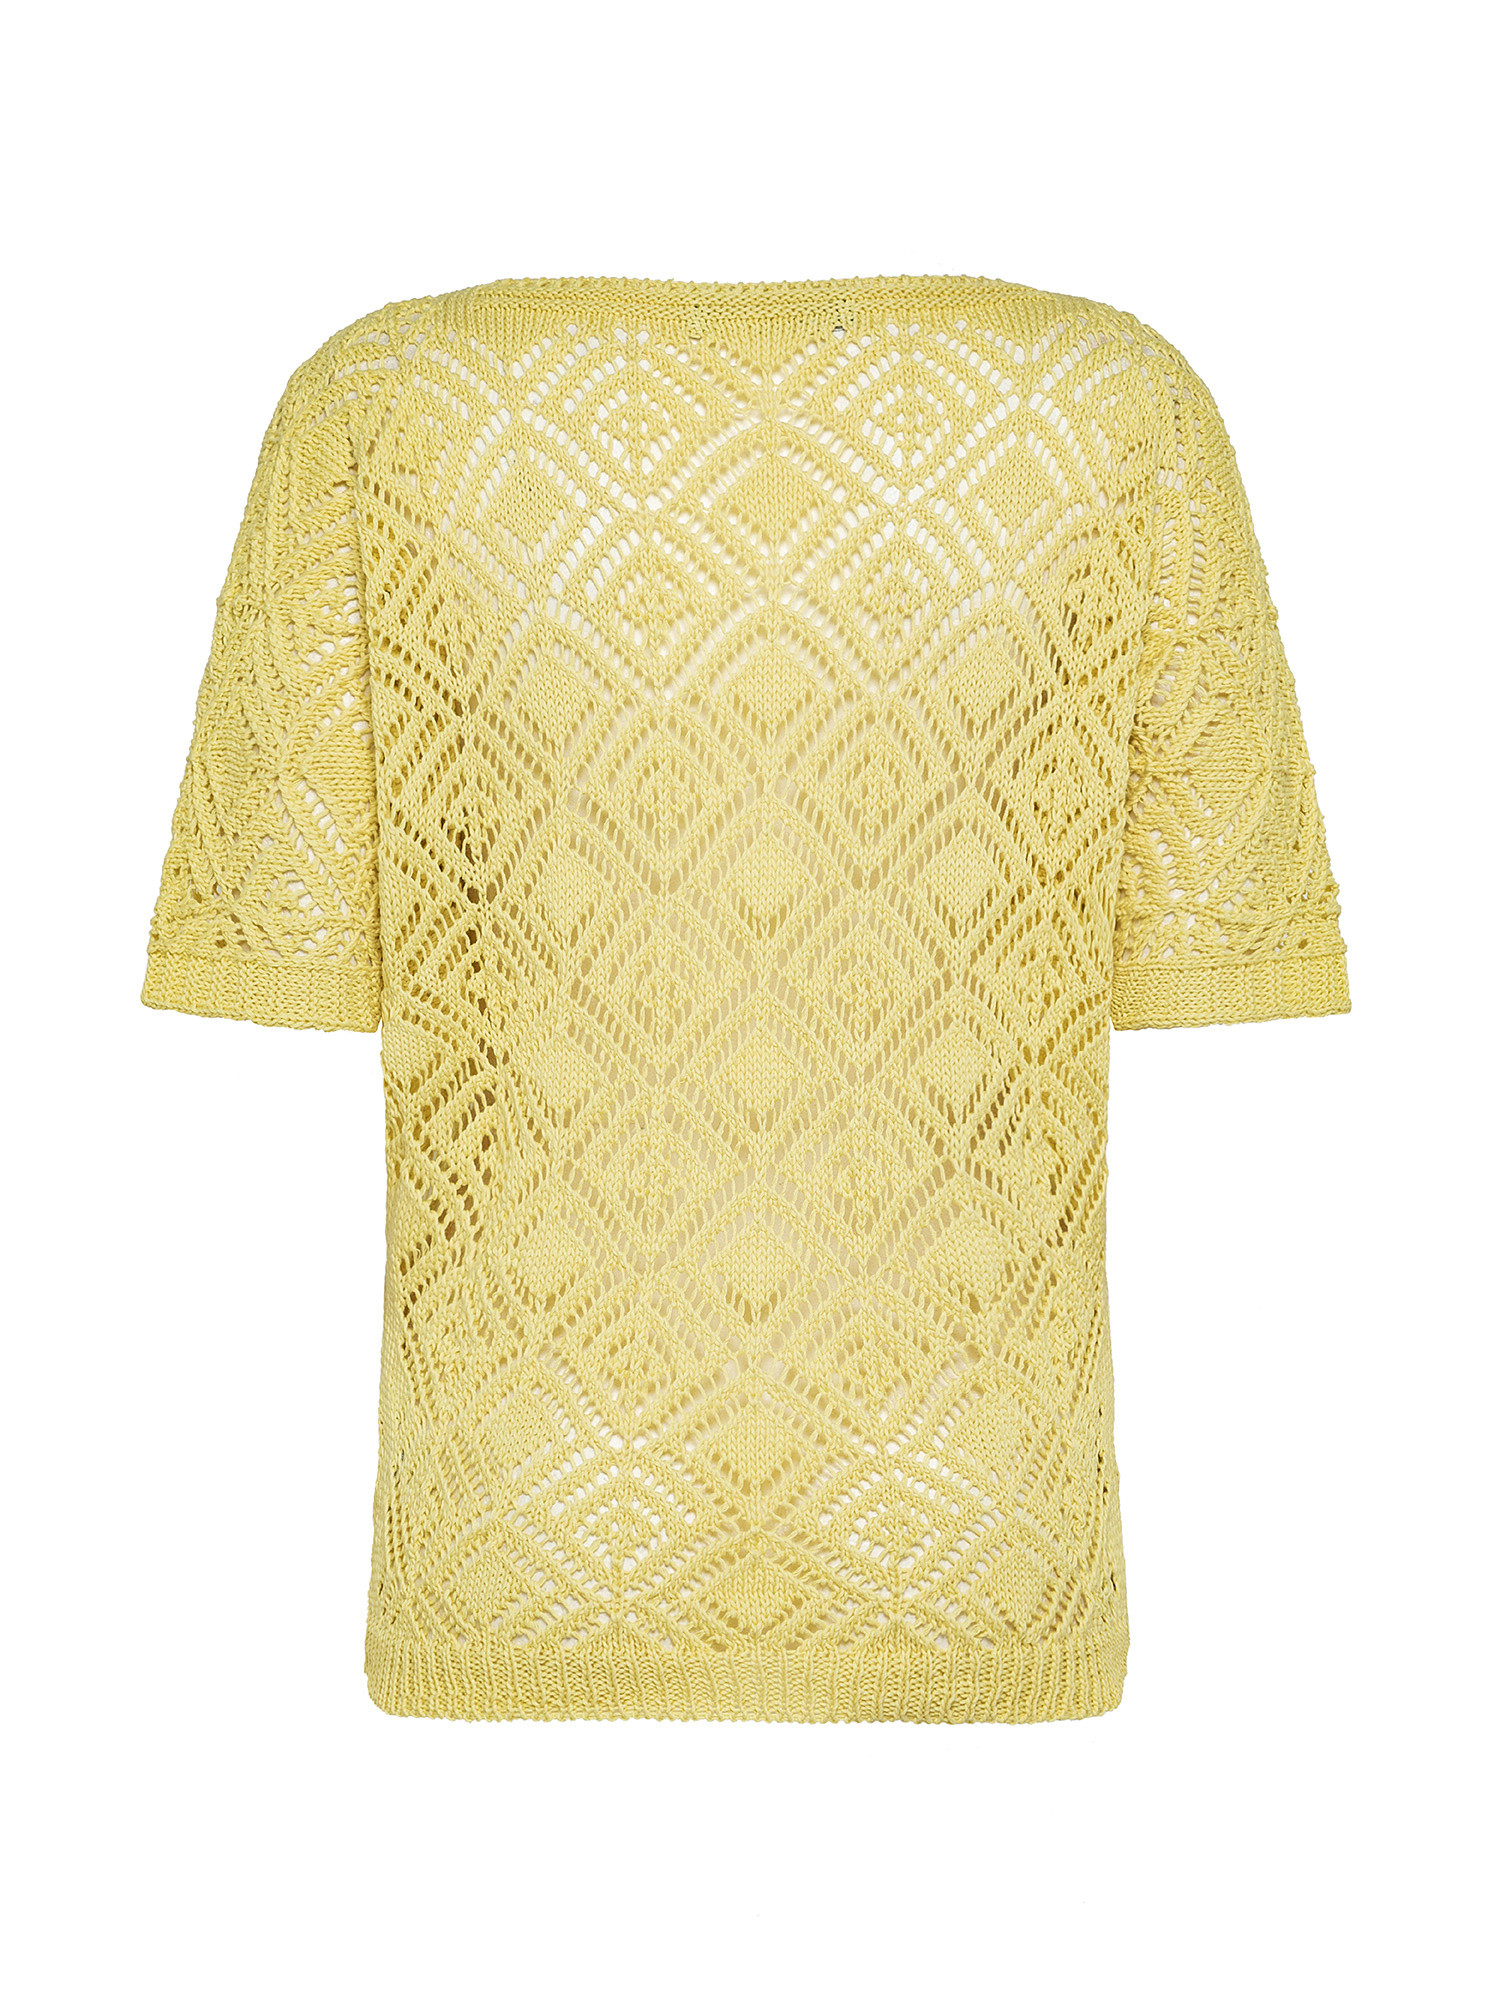 Patterned stitch kimono sweater, Yellow, large image number 1